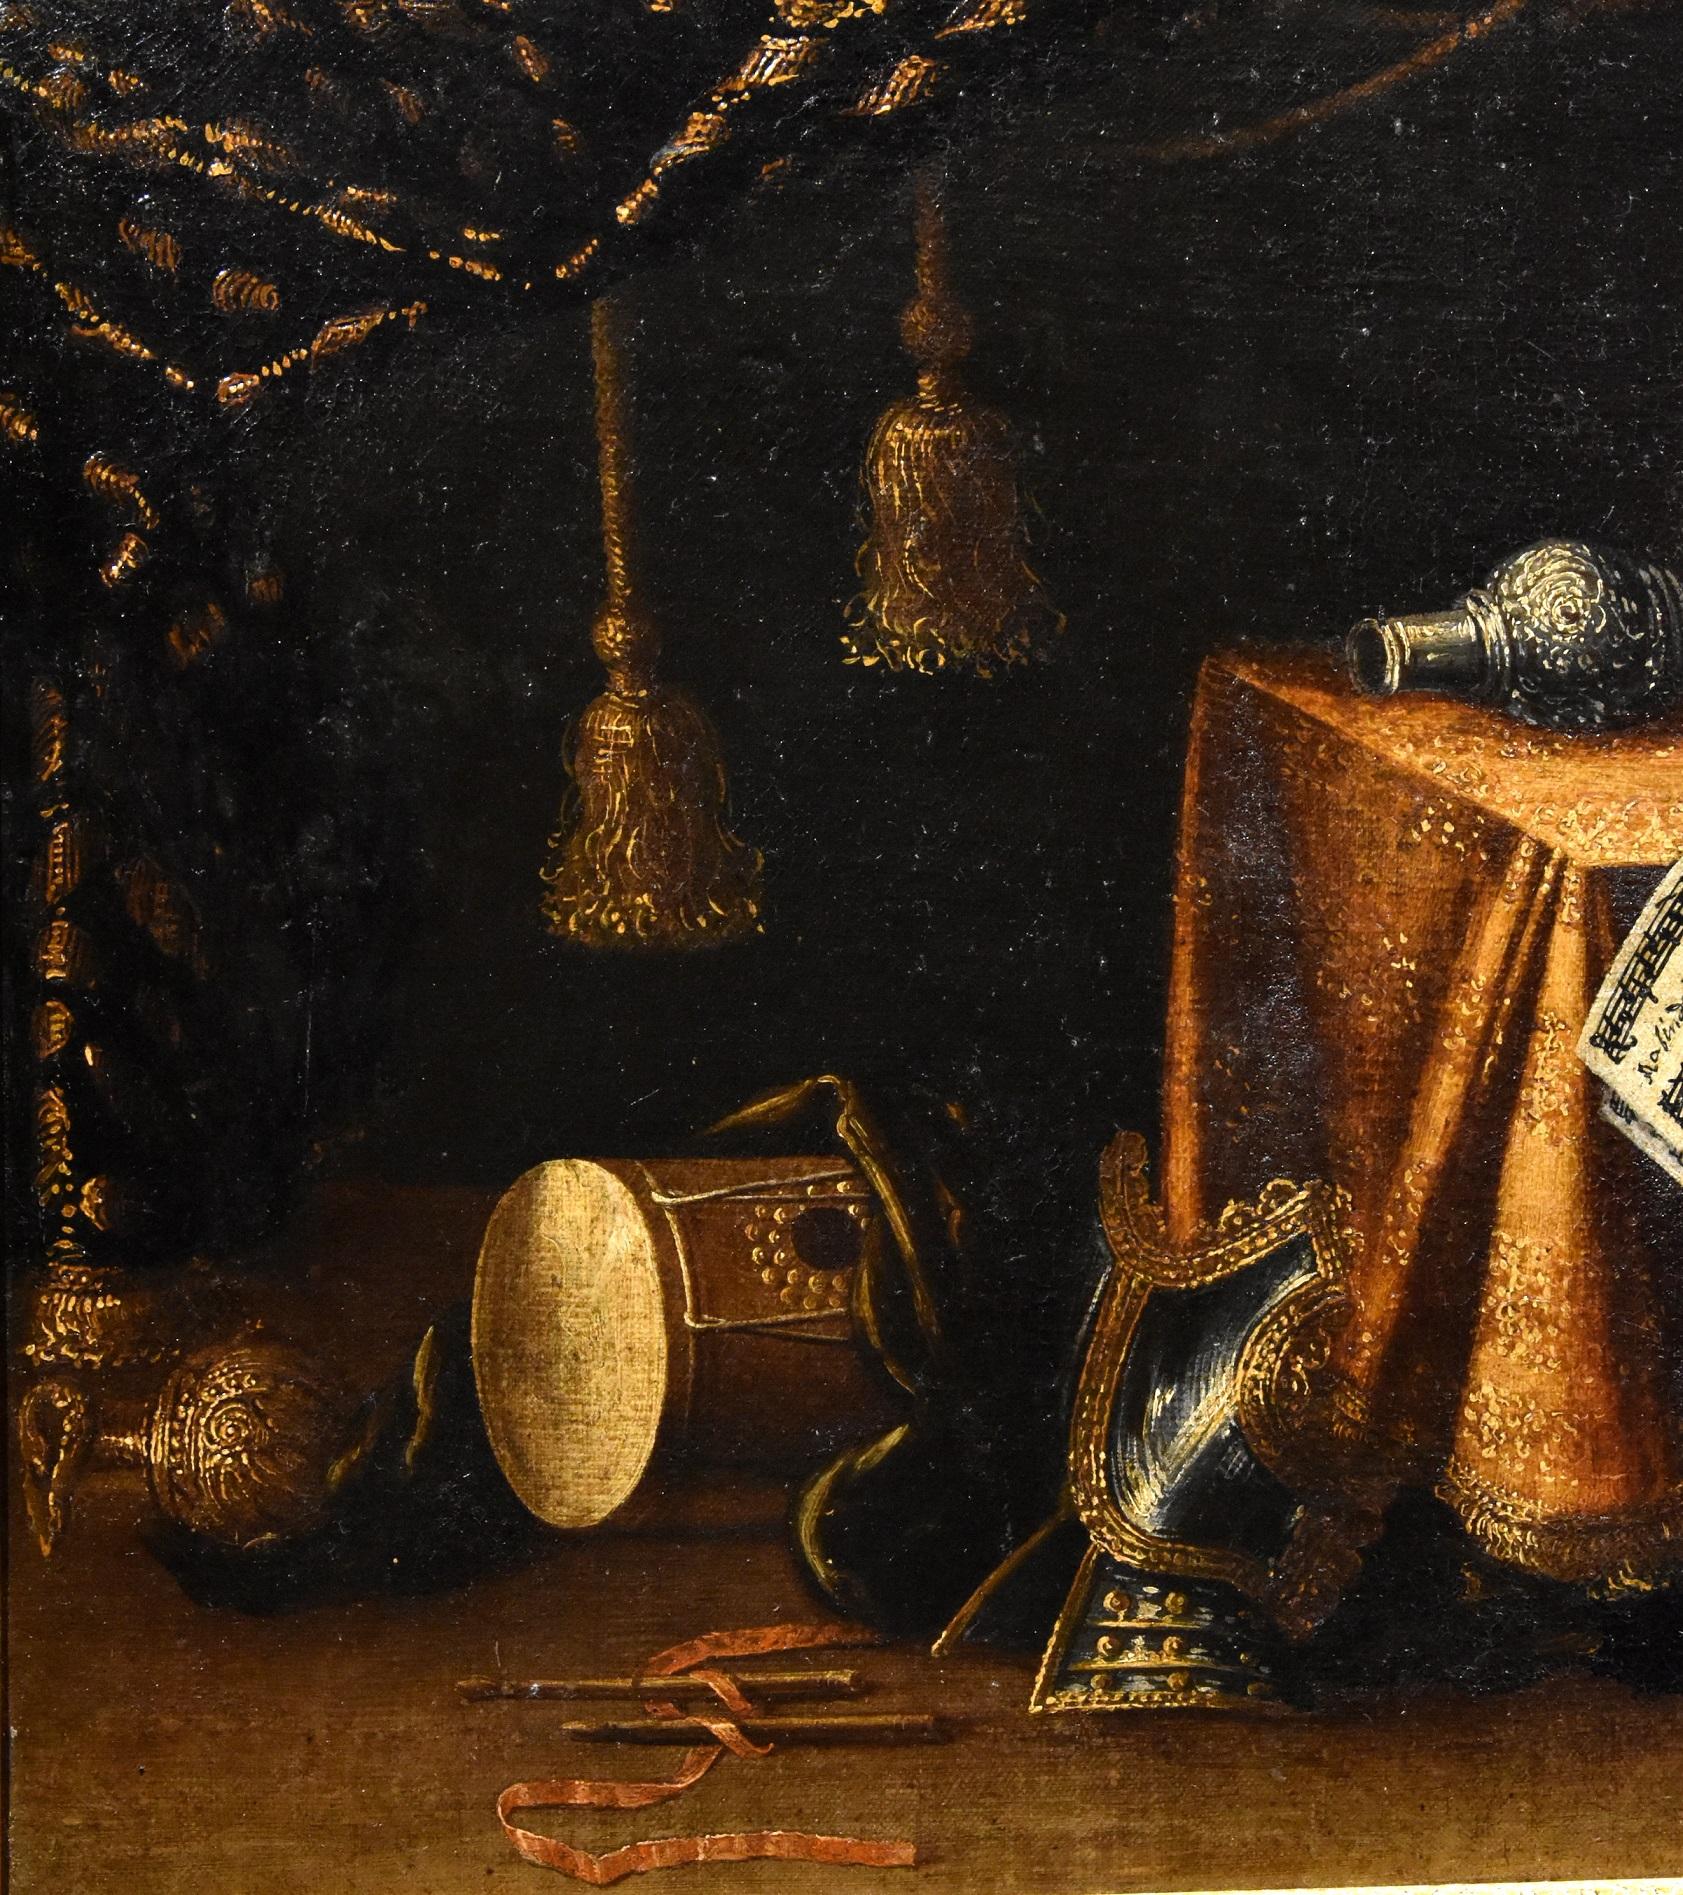 Francesco Noletti dit le Maltais (Malte 1611-Rome 1654) Atelier/cercle de
Nature morte avec instruments de musique, jouets, armures, textiles et objets précieux

Huile sur toile (52 x 78 cm. - dans le cadre 71 x 102)

Ce tableau, d'un bel effet